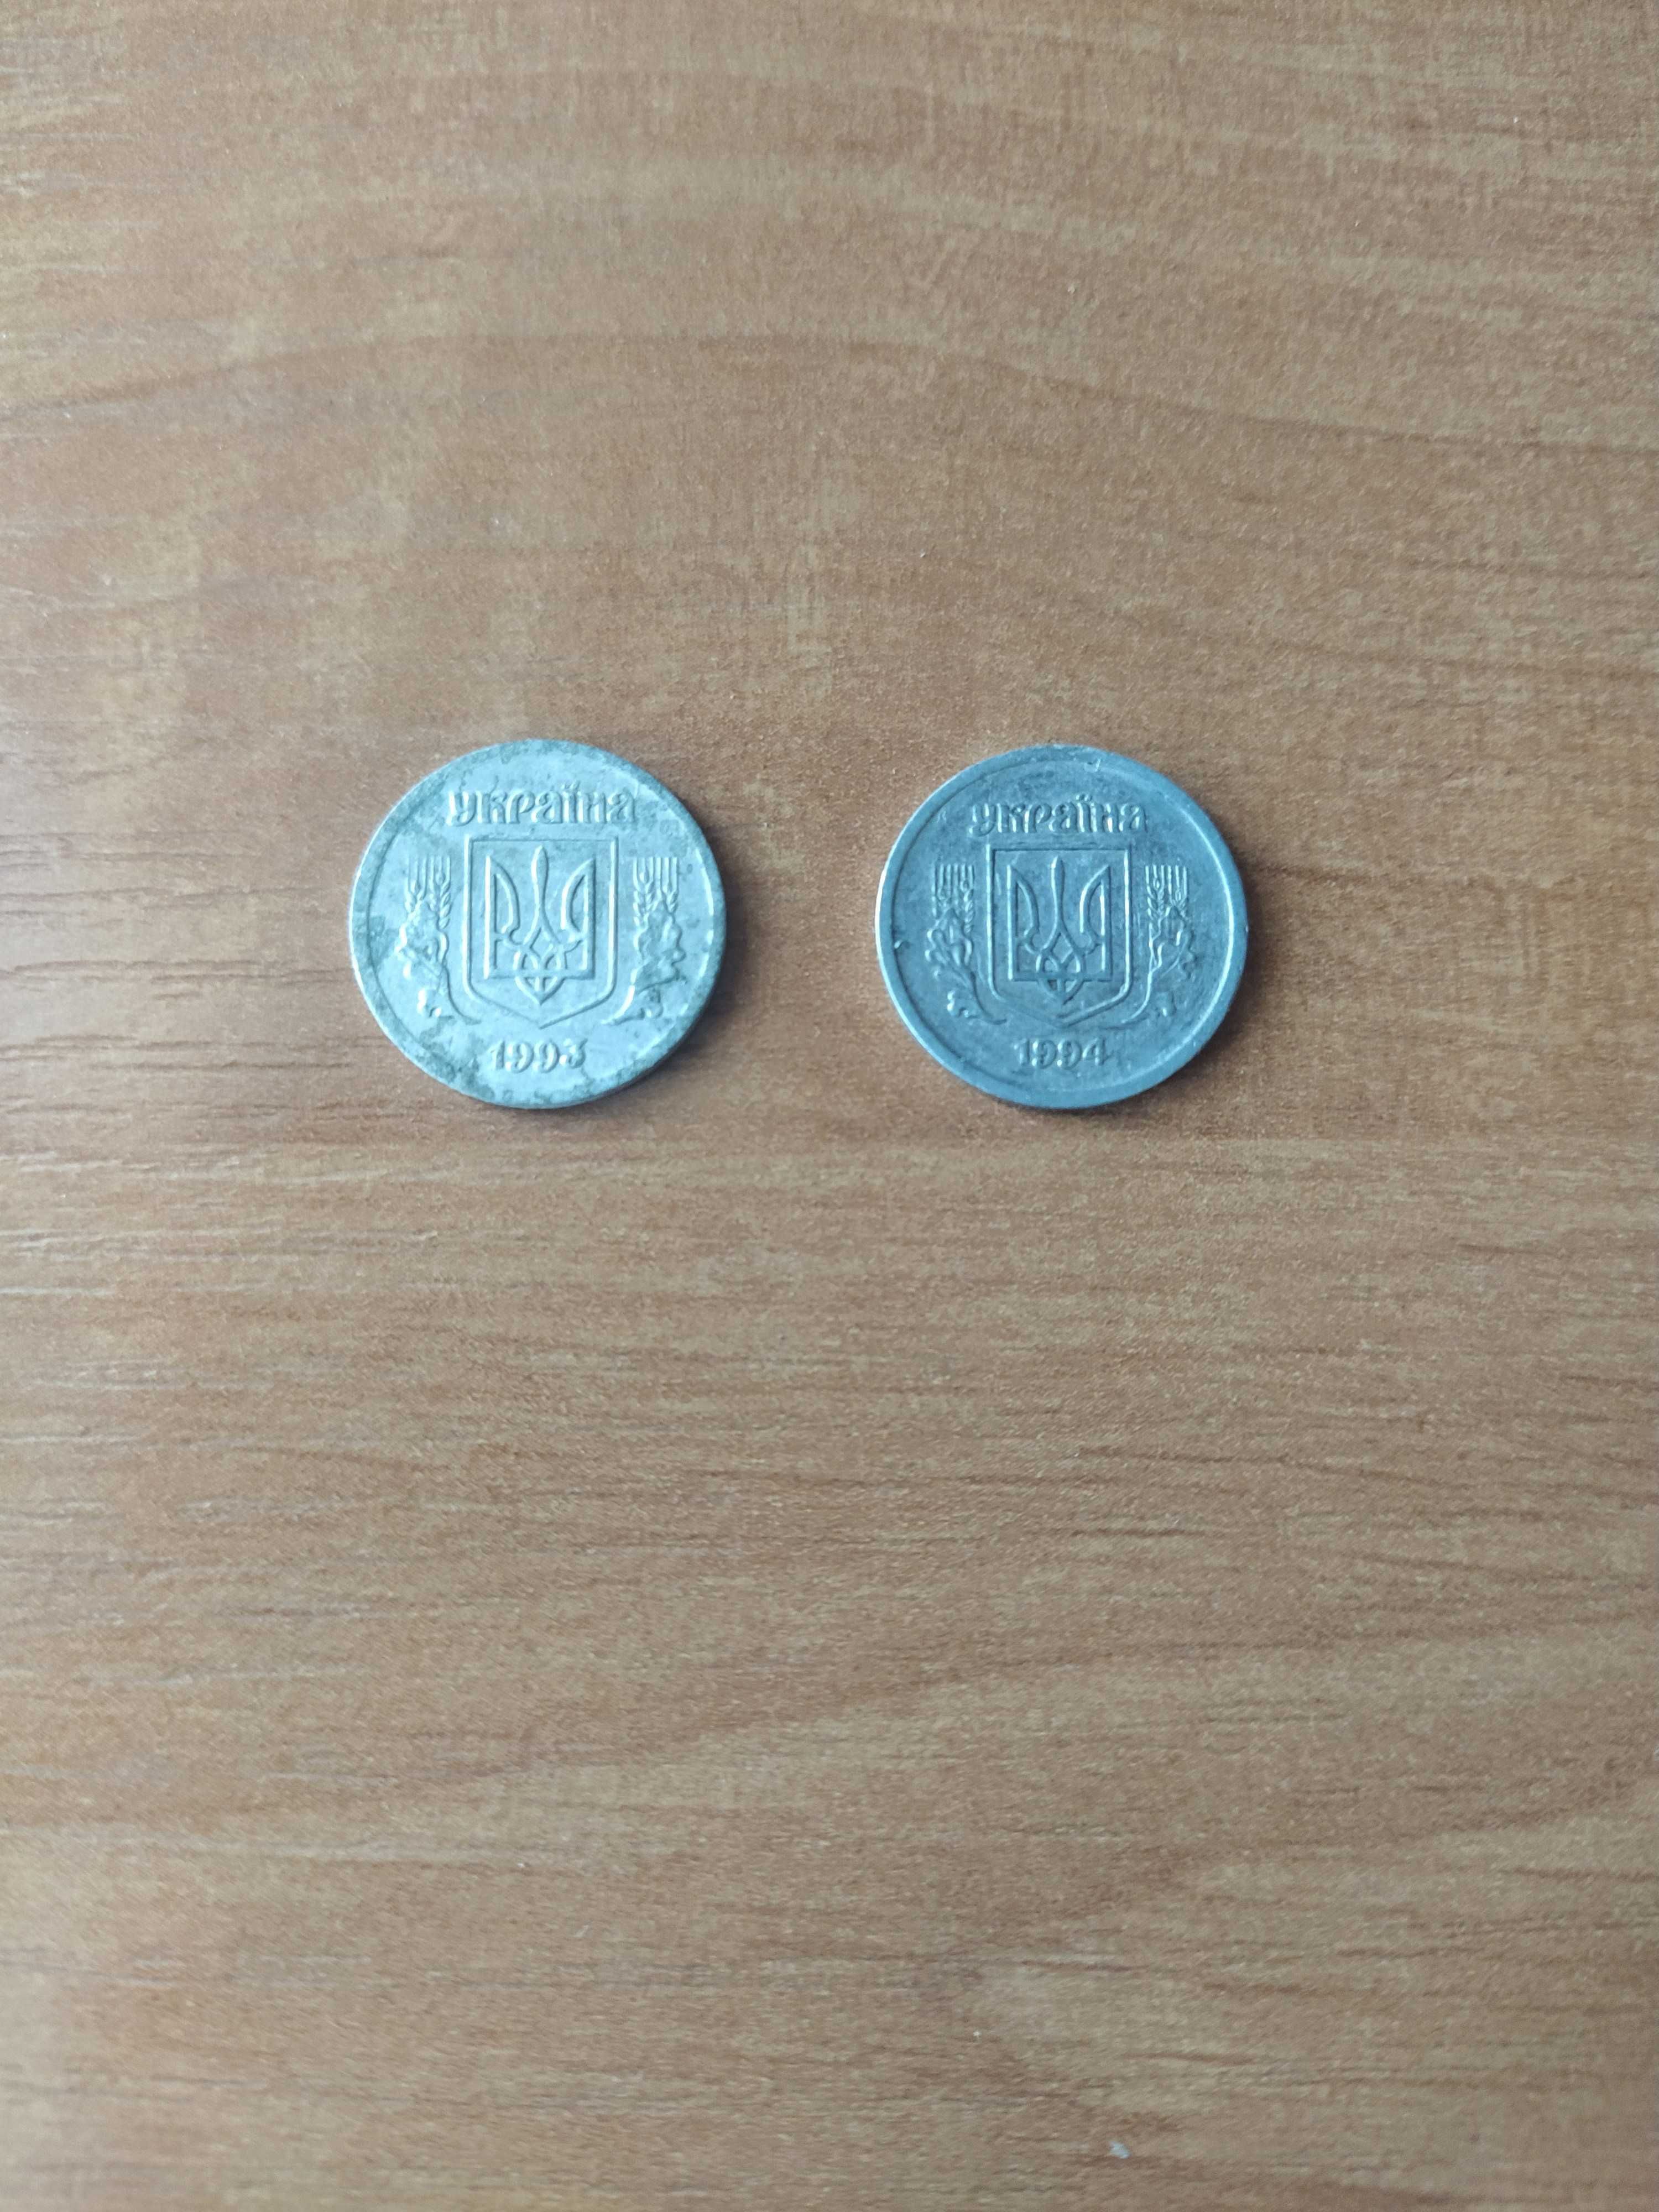 2 копейки Украина 1993 и 1994 года (алюминий)